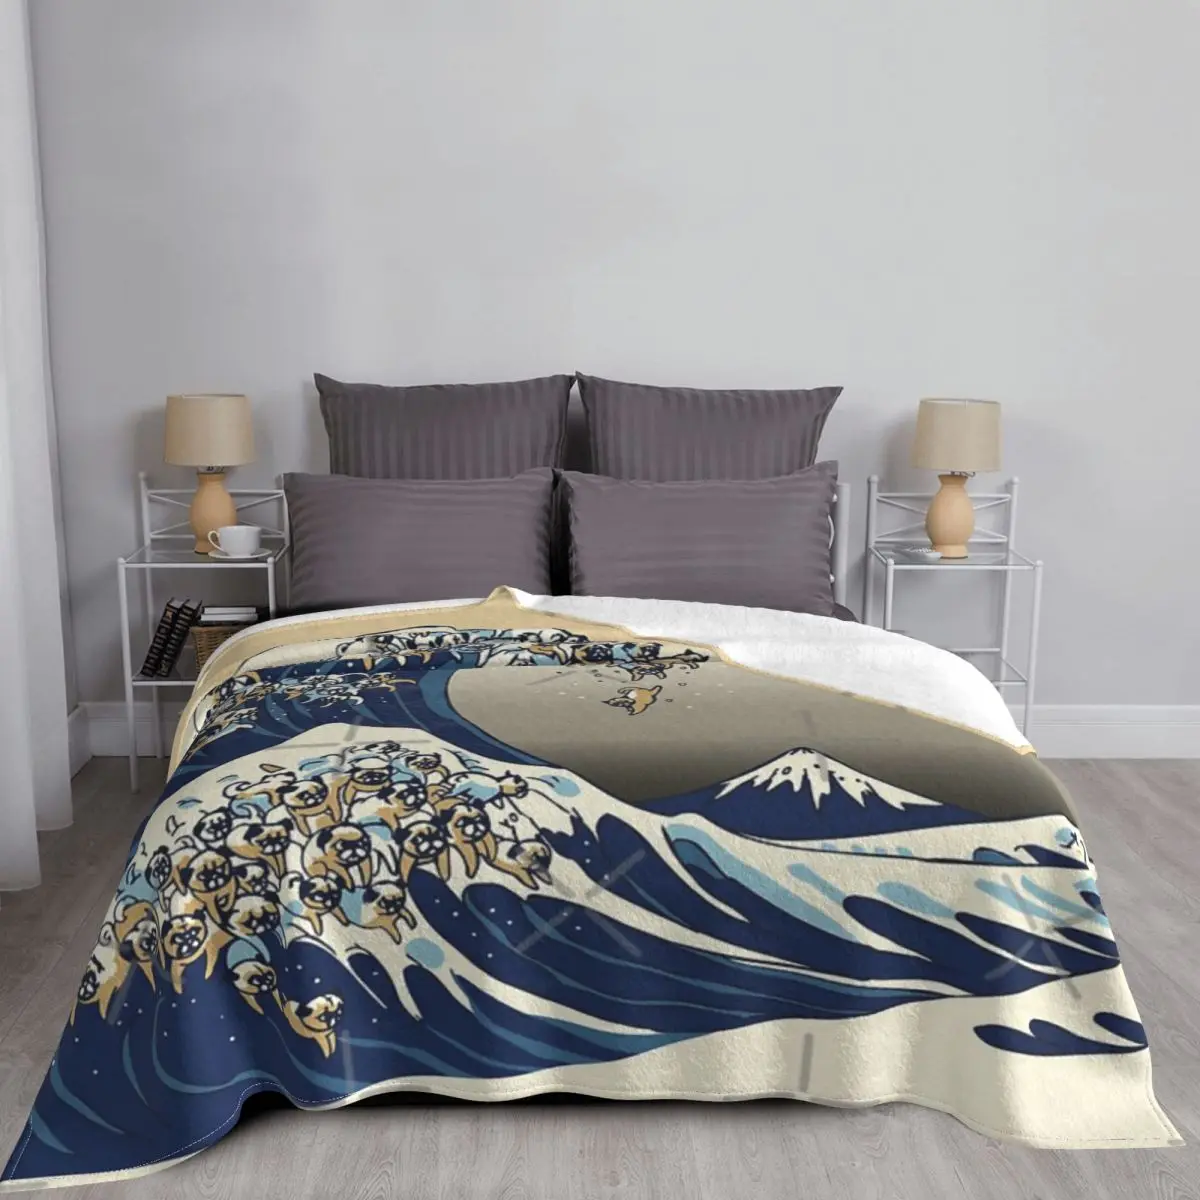 

Великолепное одеяло с волной Мопсов Ванильное небо покрывало для кровати клетчатое пляжное одеяло роскошное пляжное полотенце